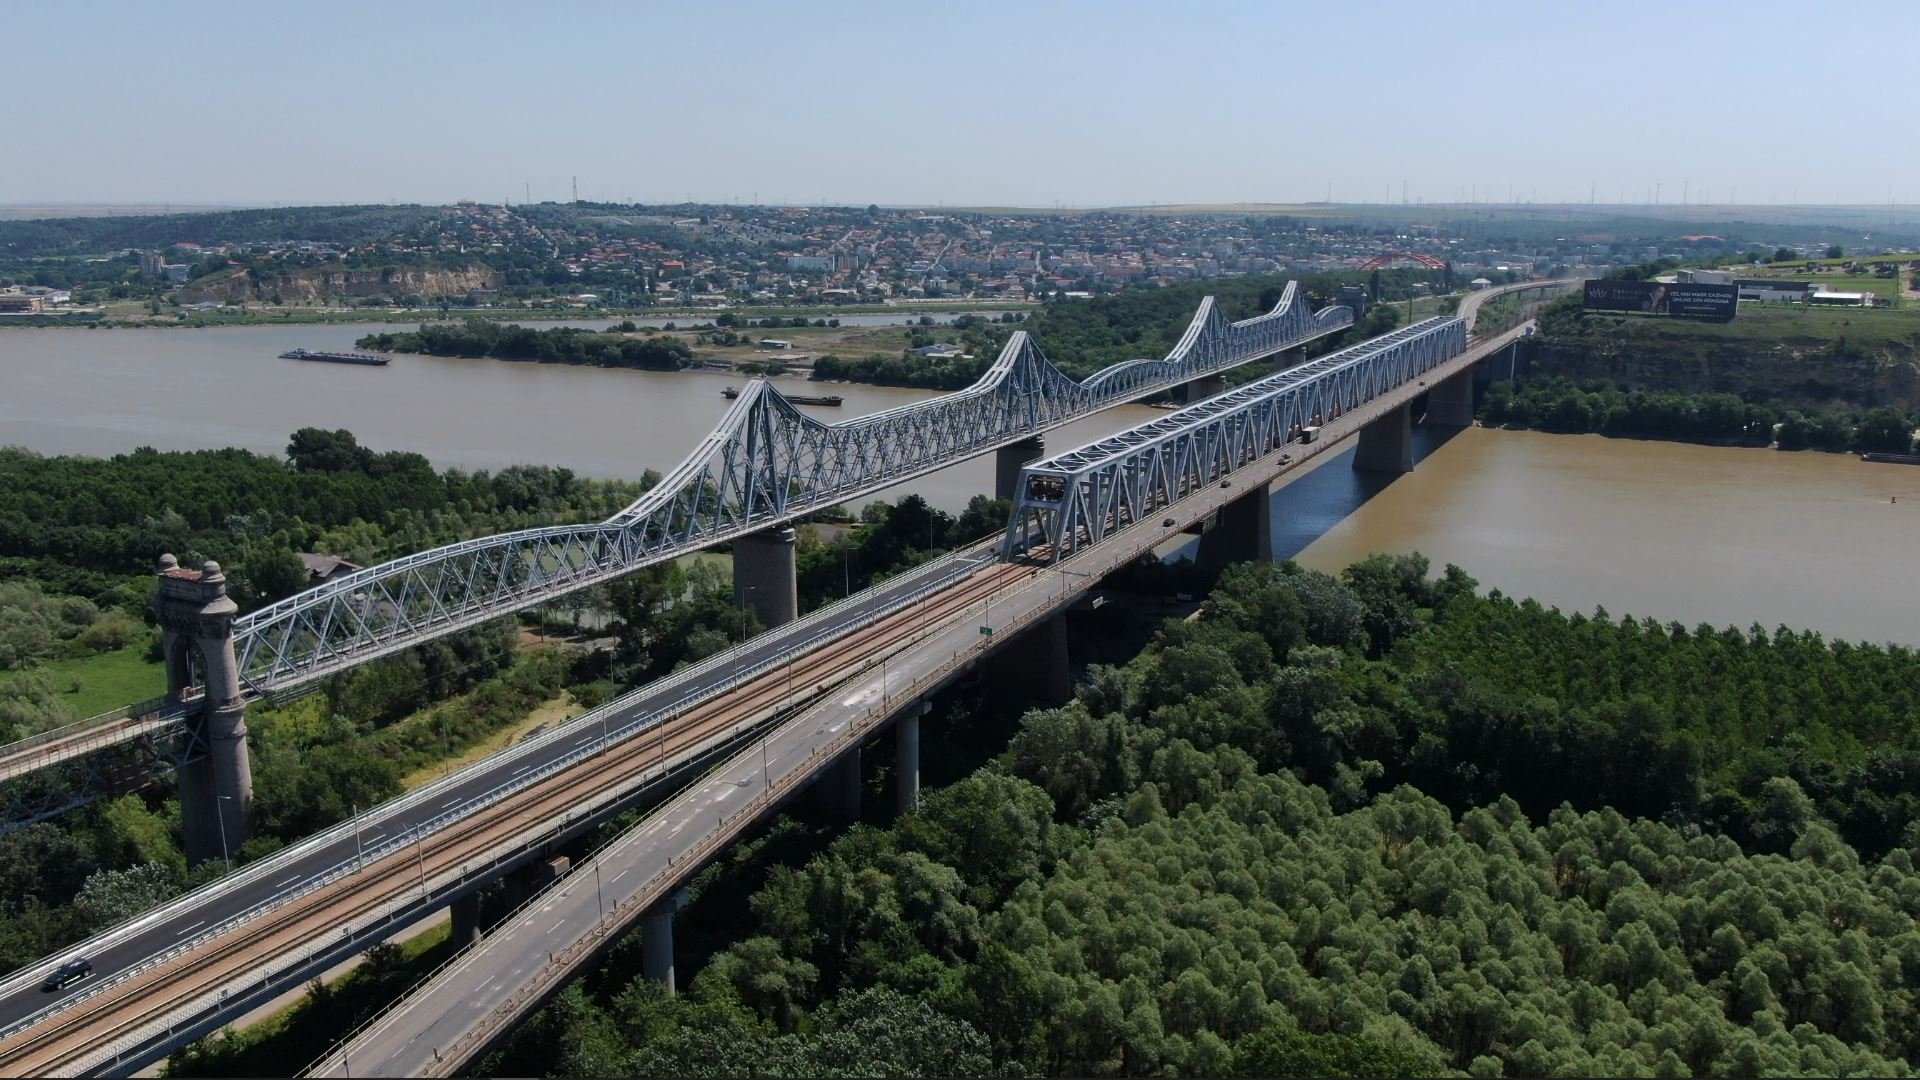  Au fost ridicate restricţiile de circulaţie pe Podul peste Dunăre de la Cernavodă